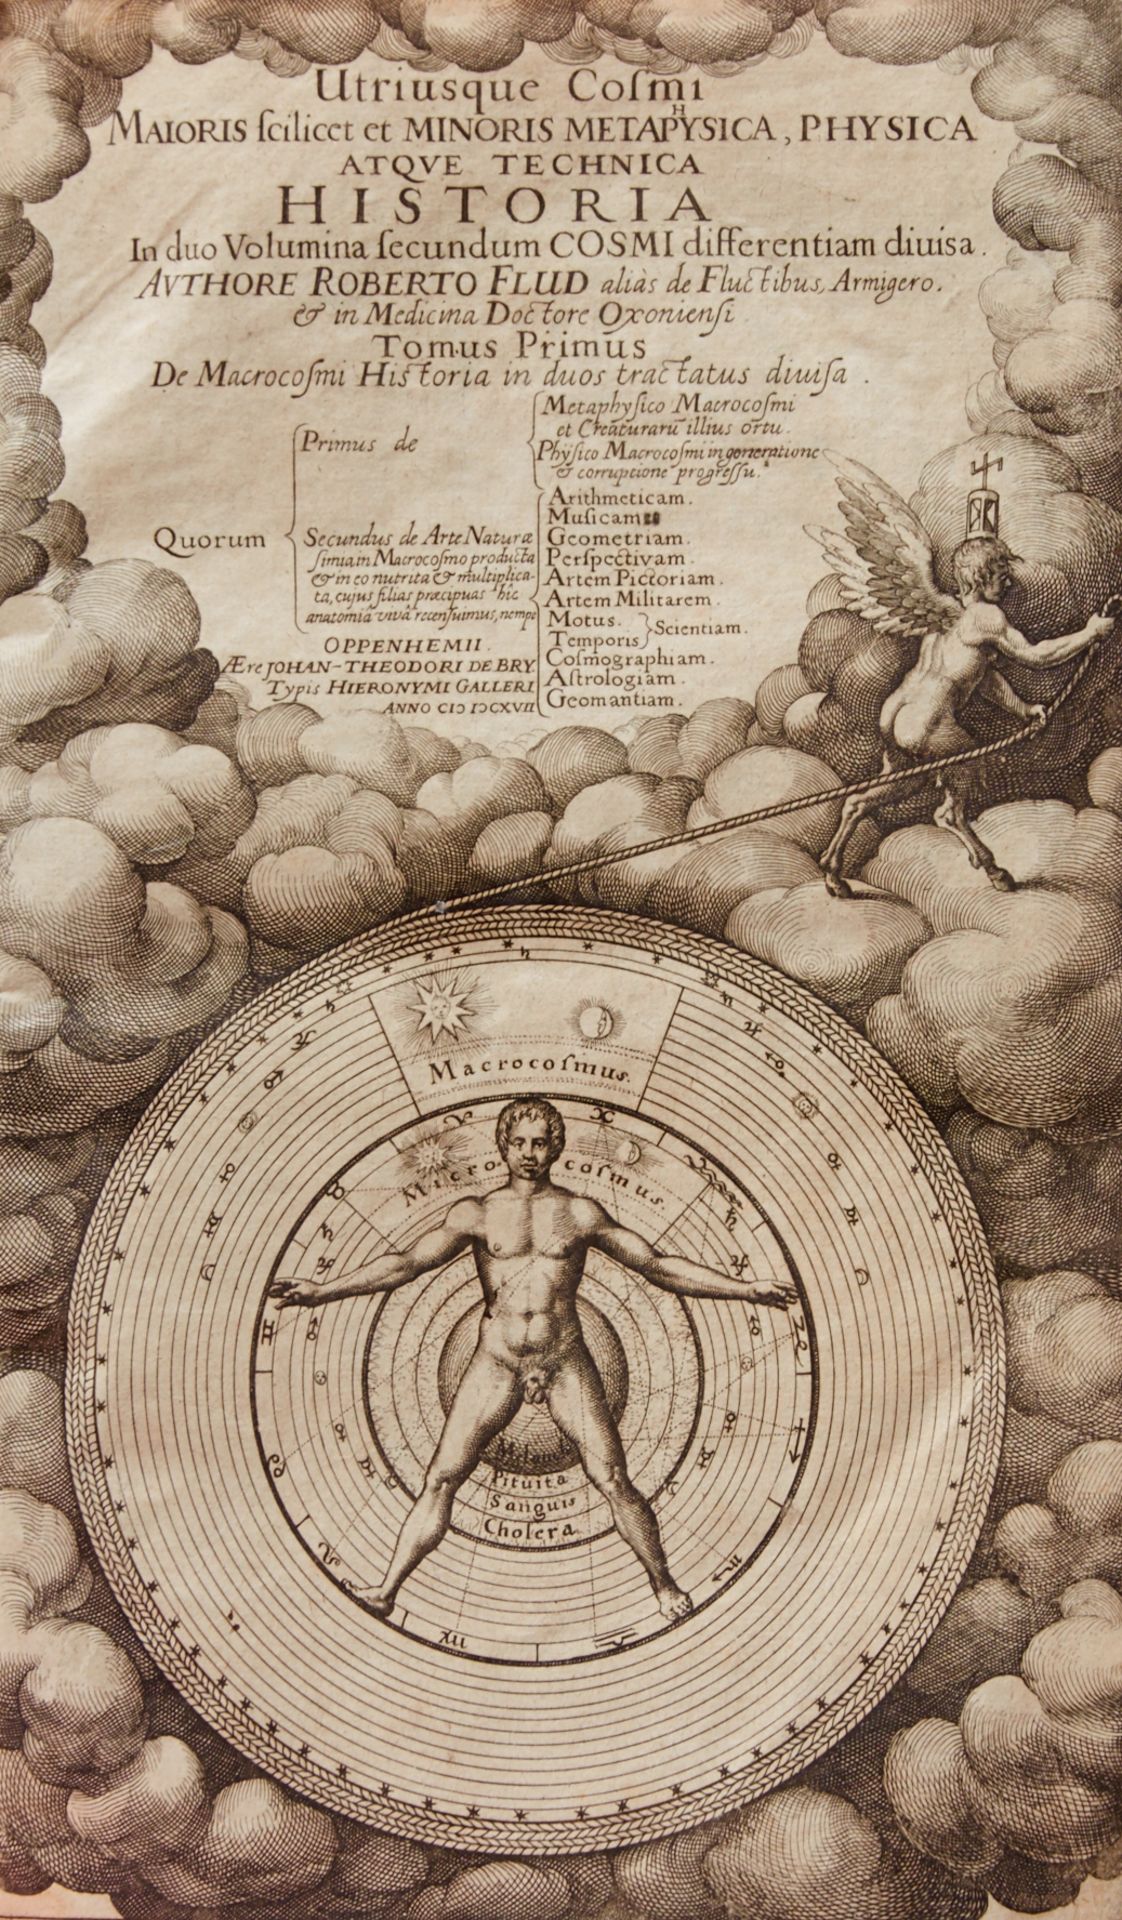 Fludd Sammlung des kompletten Werkes von Robert Fludd. 10 Werke mit 17 Tln. in 7 Bdn. 1617-38. - Bild 2 aus 9